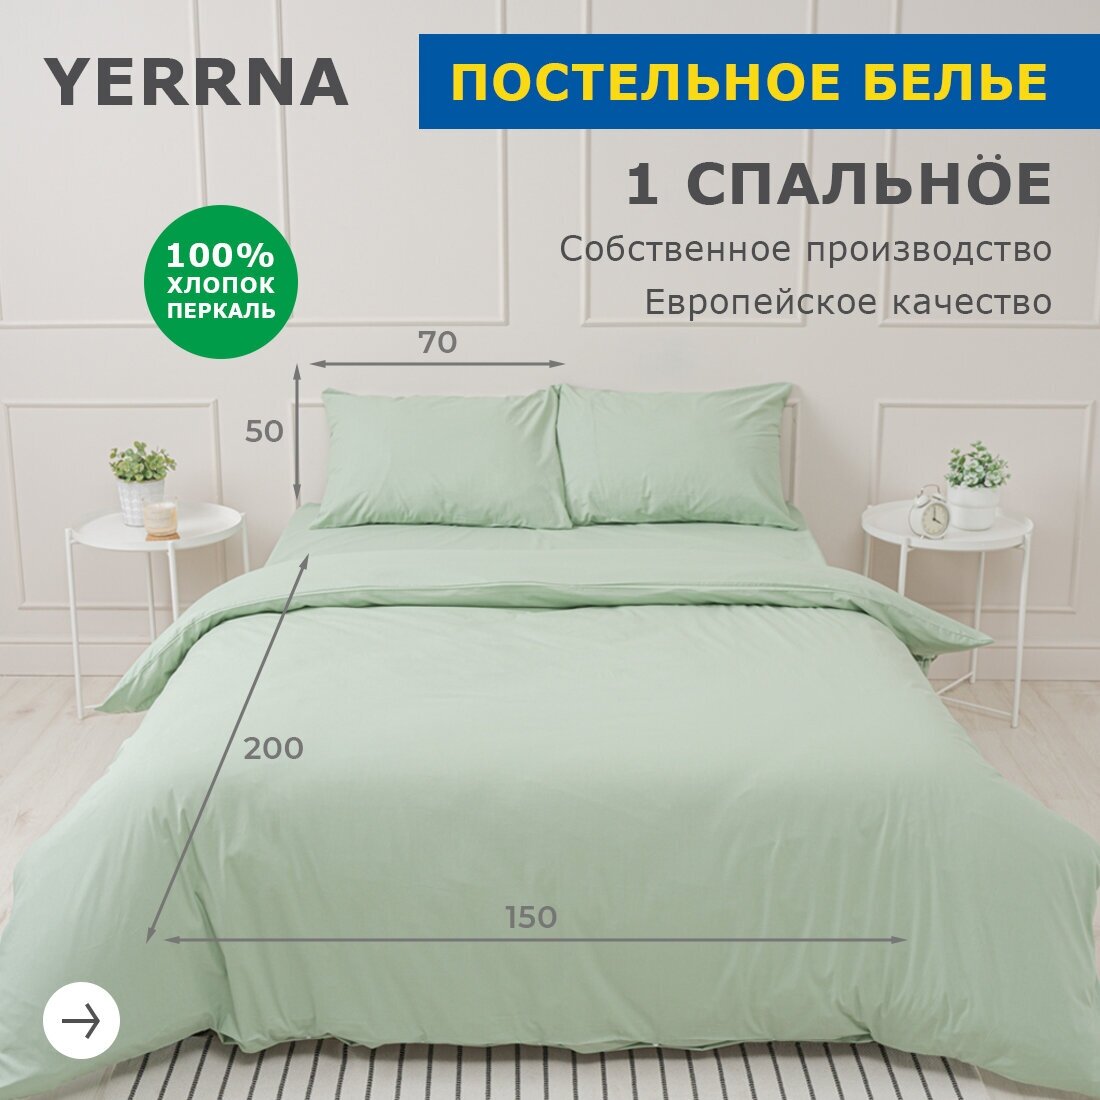 Комплект постельного белья 1 спальный YERRNA, наволочка 50х70 1шт, перкаль, морозно-зеленый, с2081шв/19200